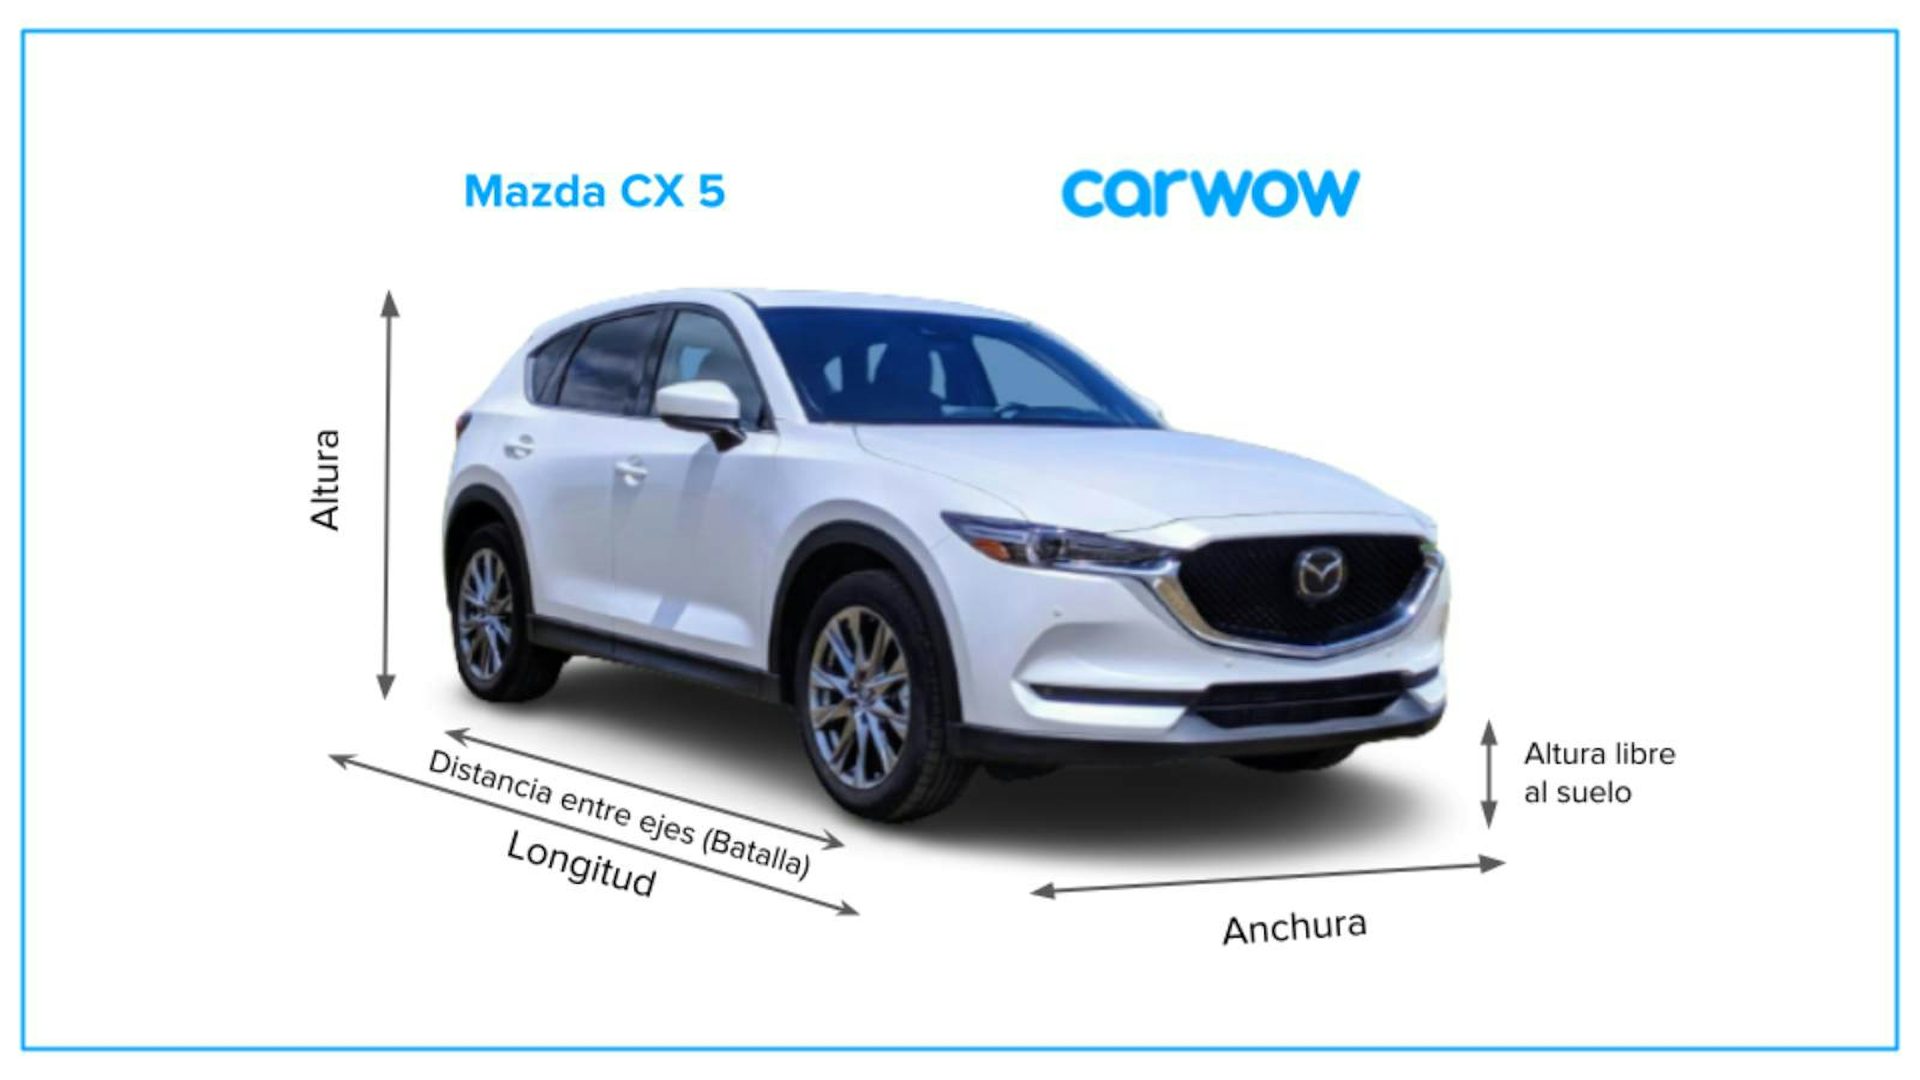 Medidas y maletero del Mazda CX5 carwow